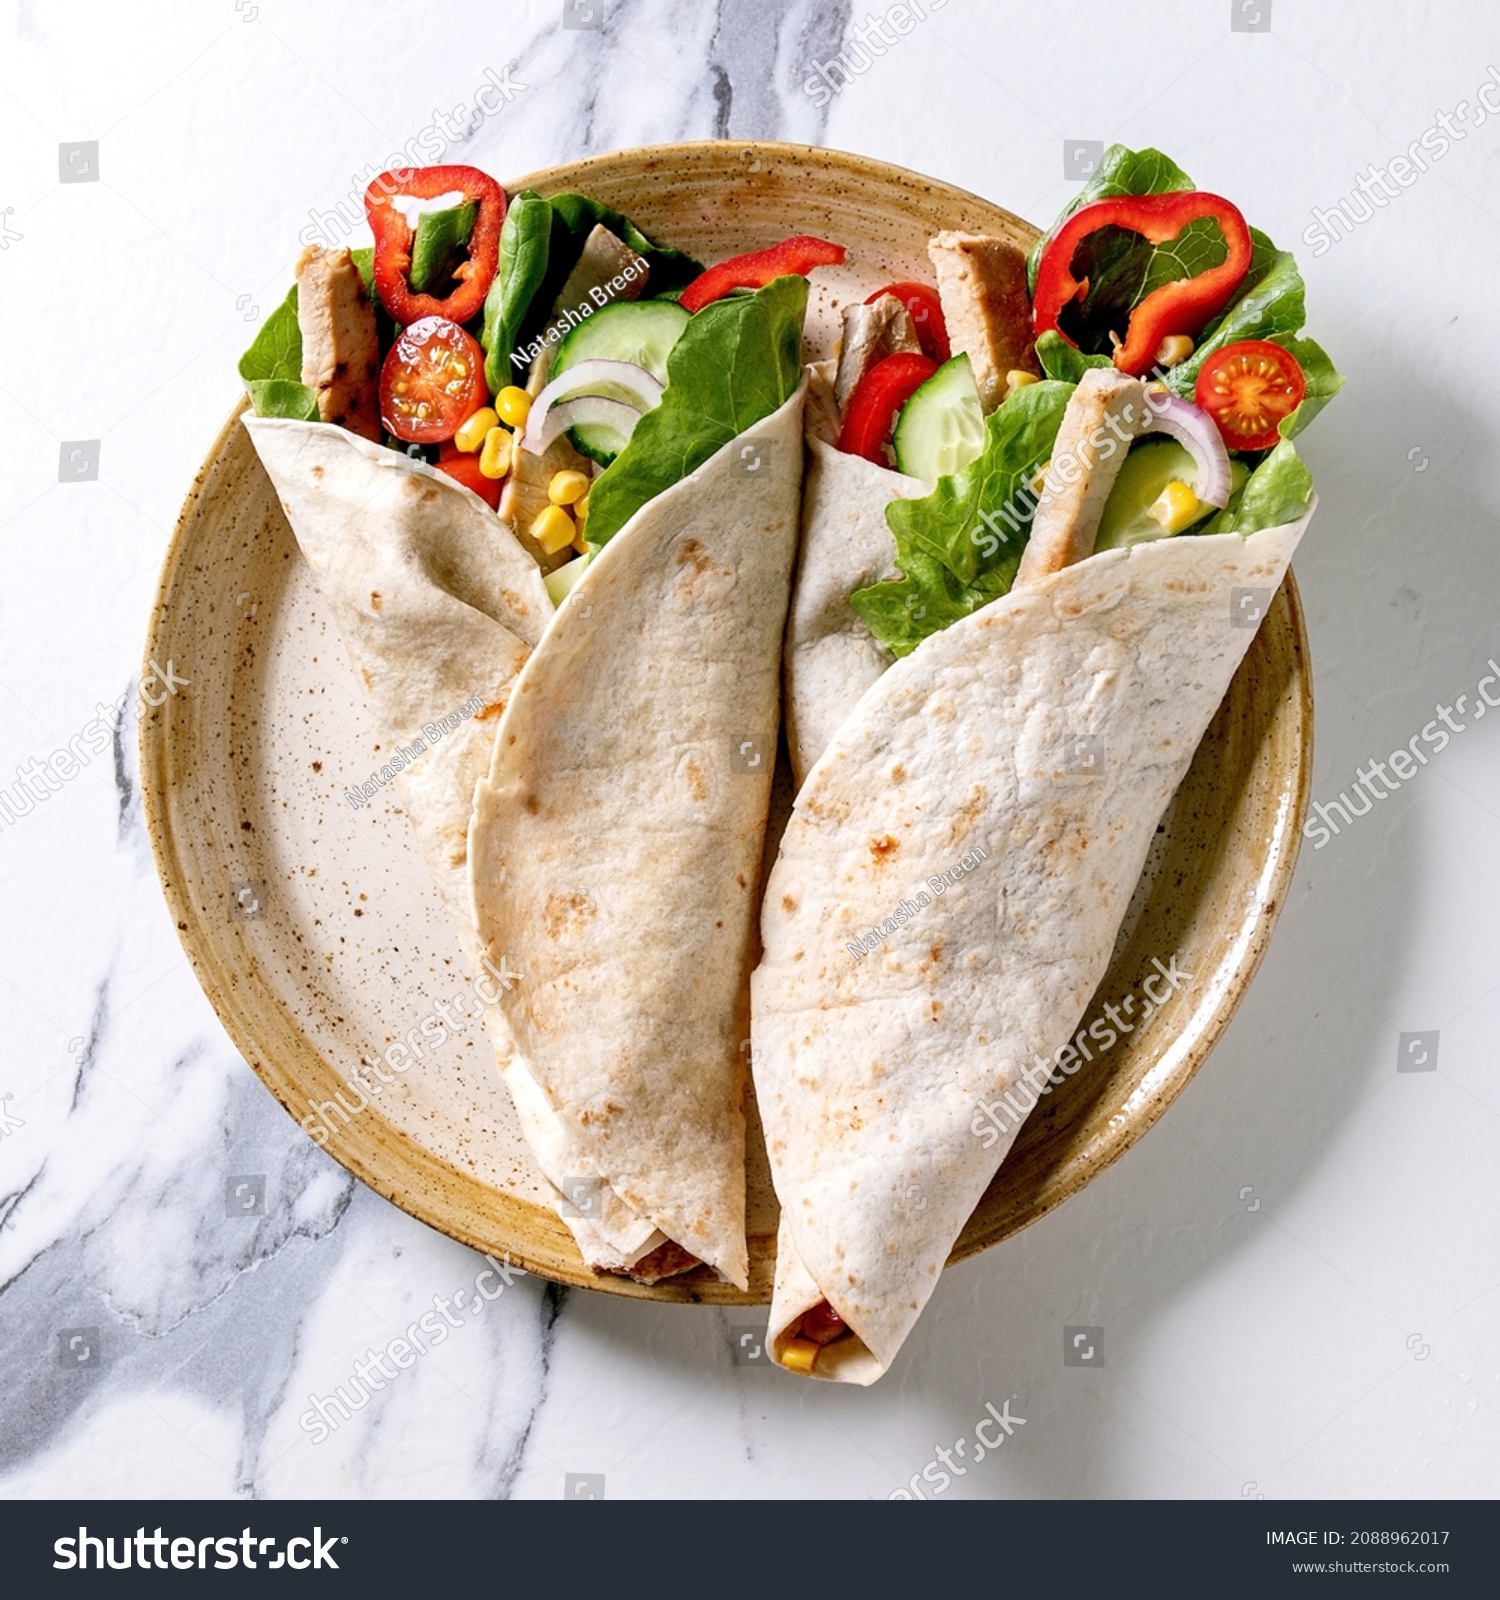 169 Tortila snacks Images, Stock Photos & Vectors | Shutterstock